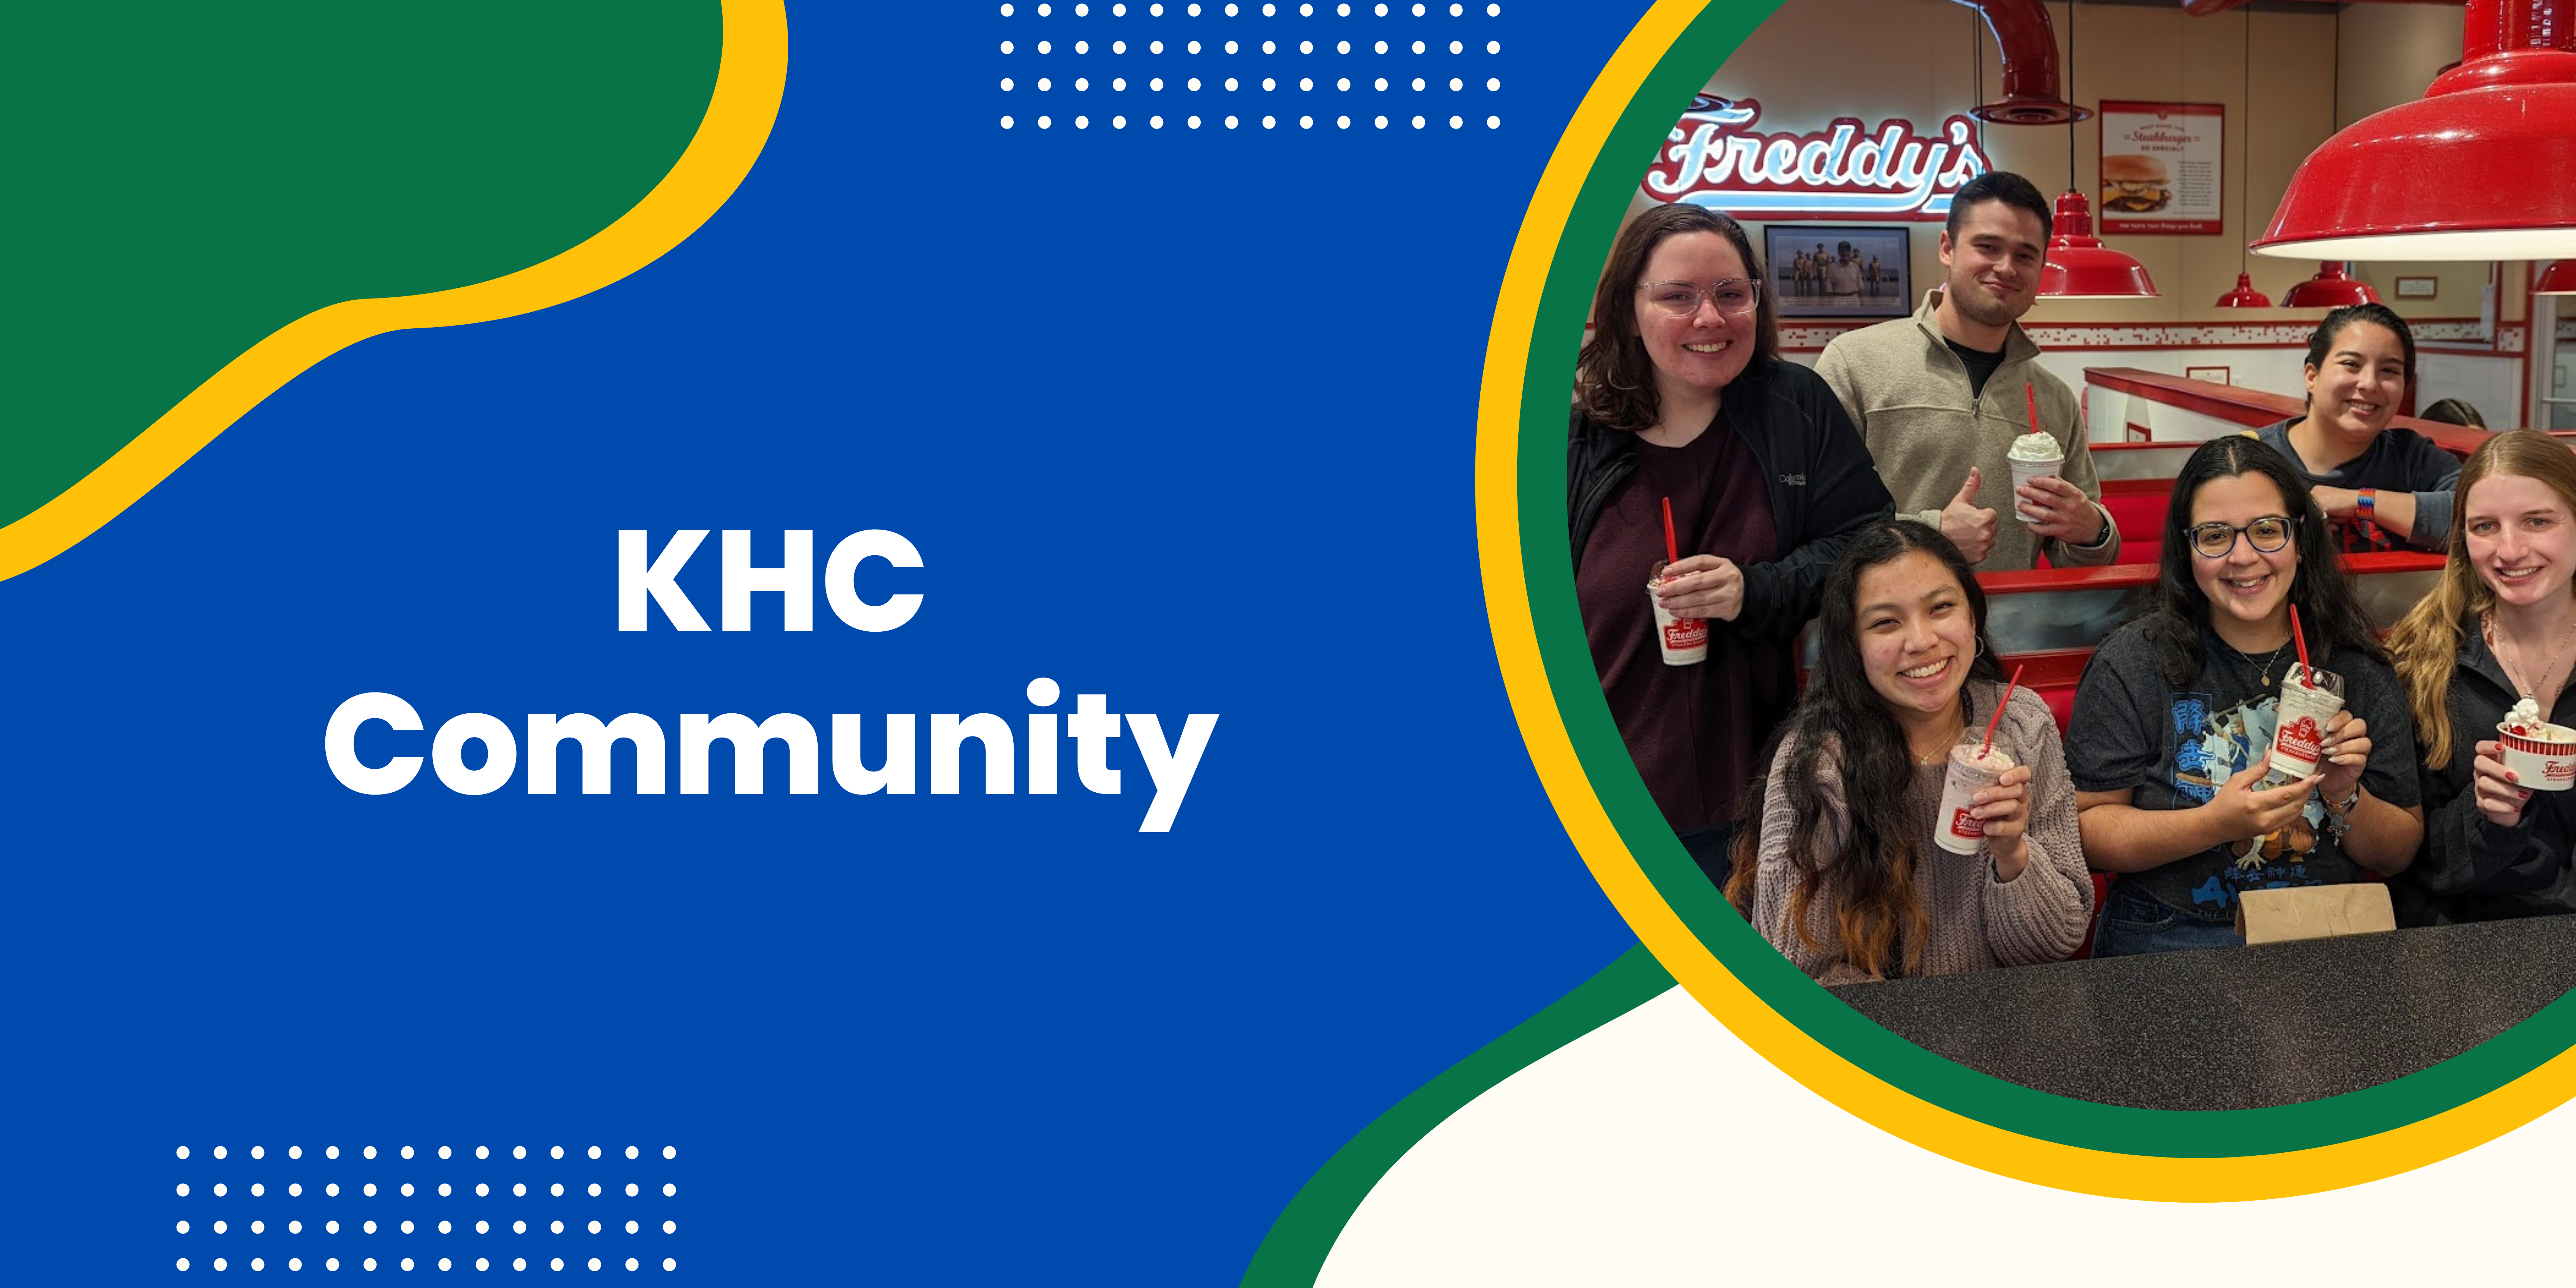 KHC Community